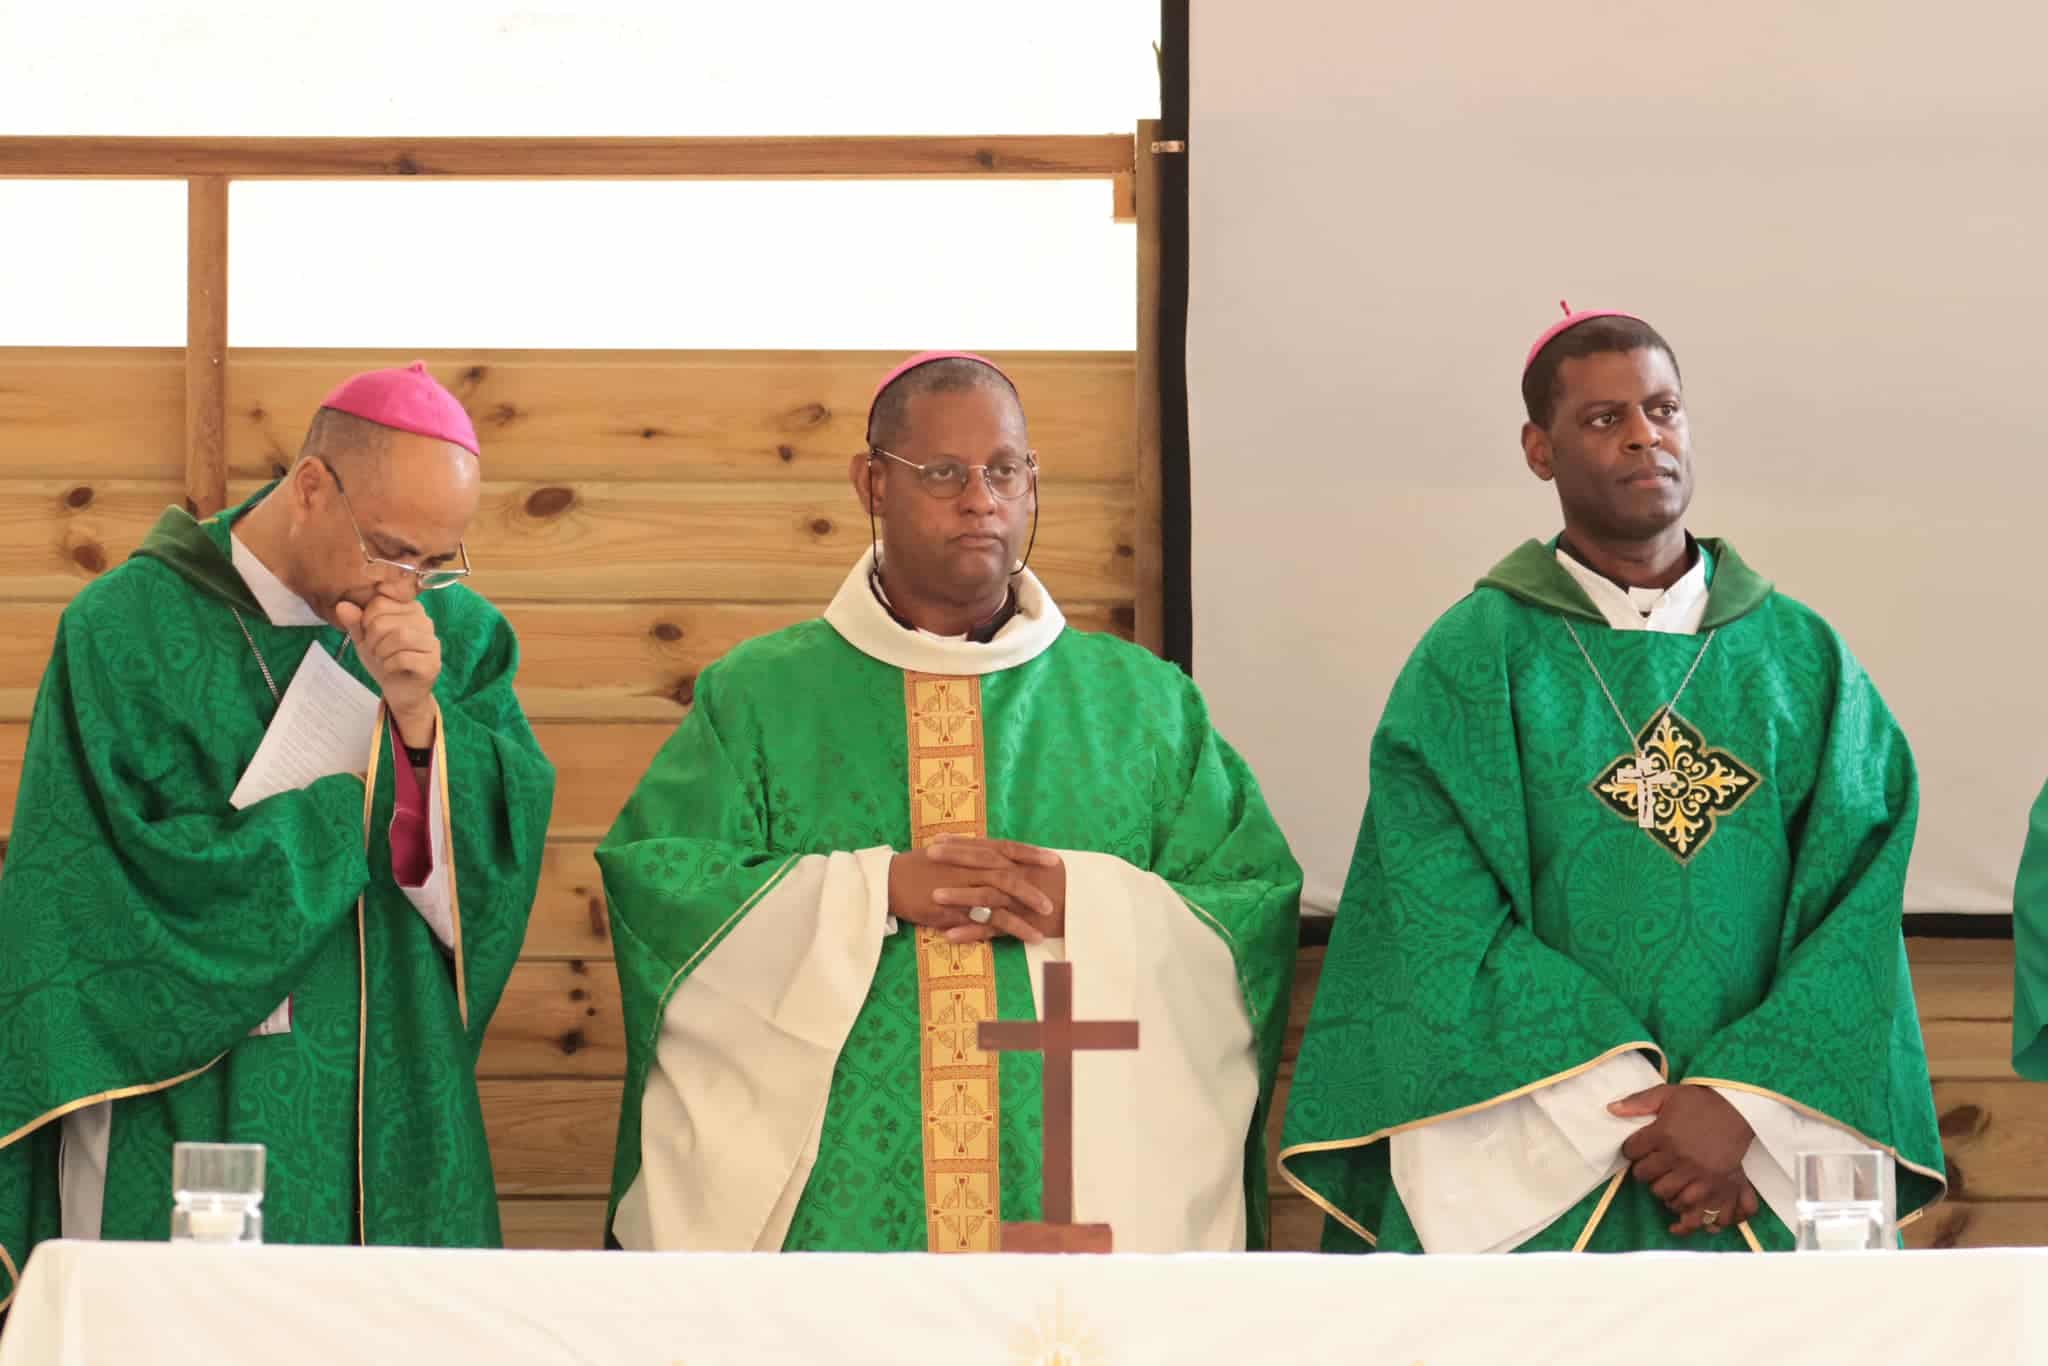 Los obispos de las Antillas francesas, David Macaire, Alain Ransay, y Philippe Guiougou